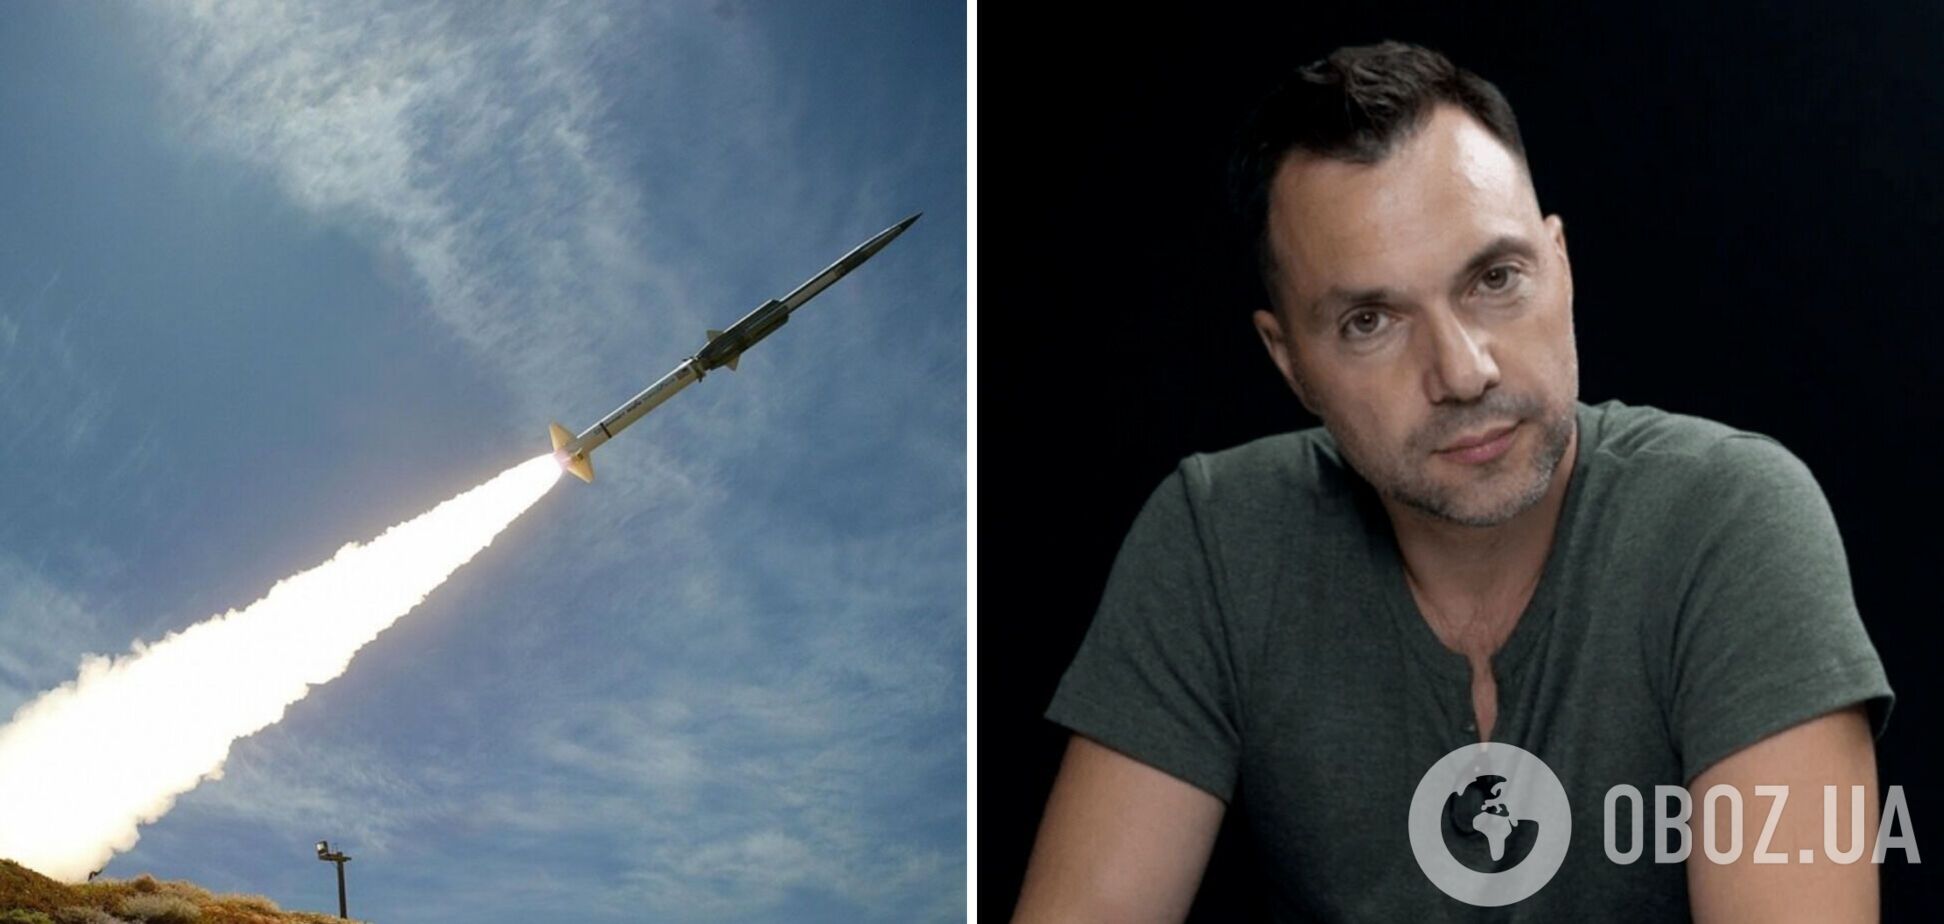 В Украине подняли панику из-за 'массированного ракетного удара': Арестович опроверг слухи. Видео